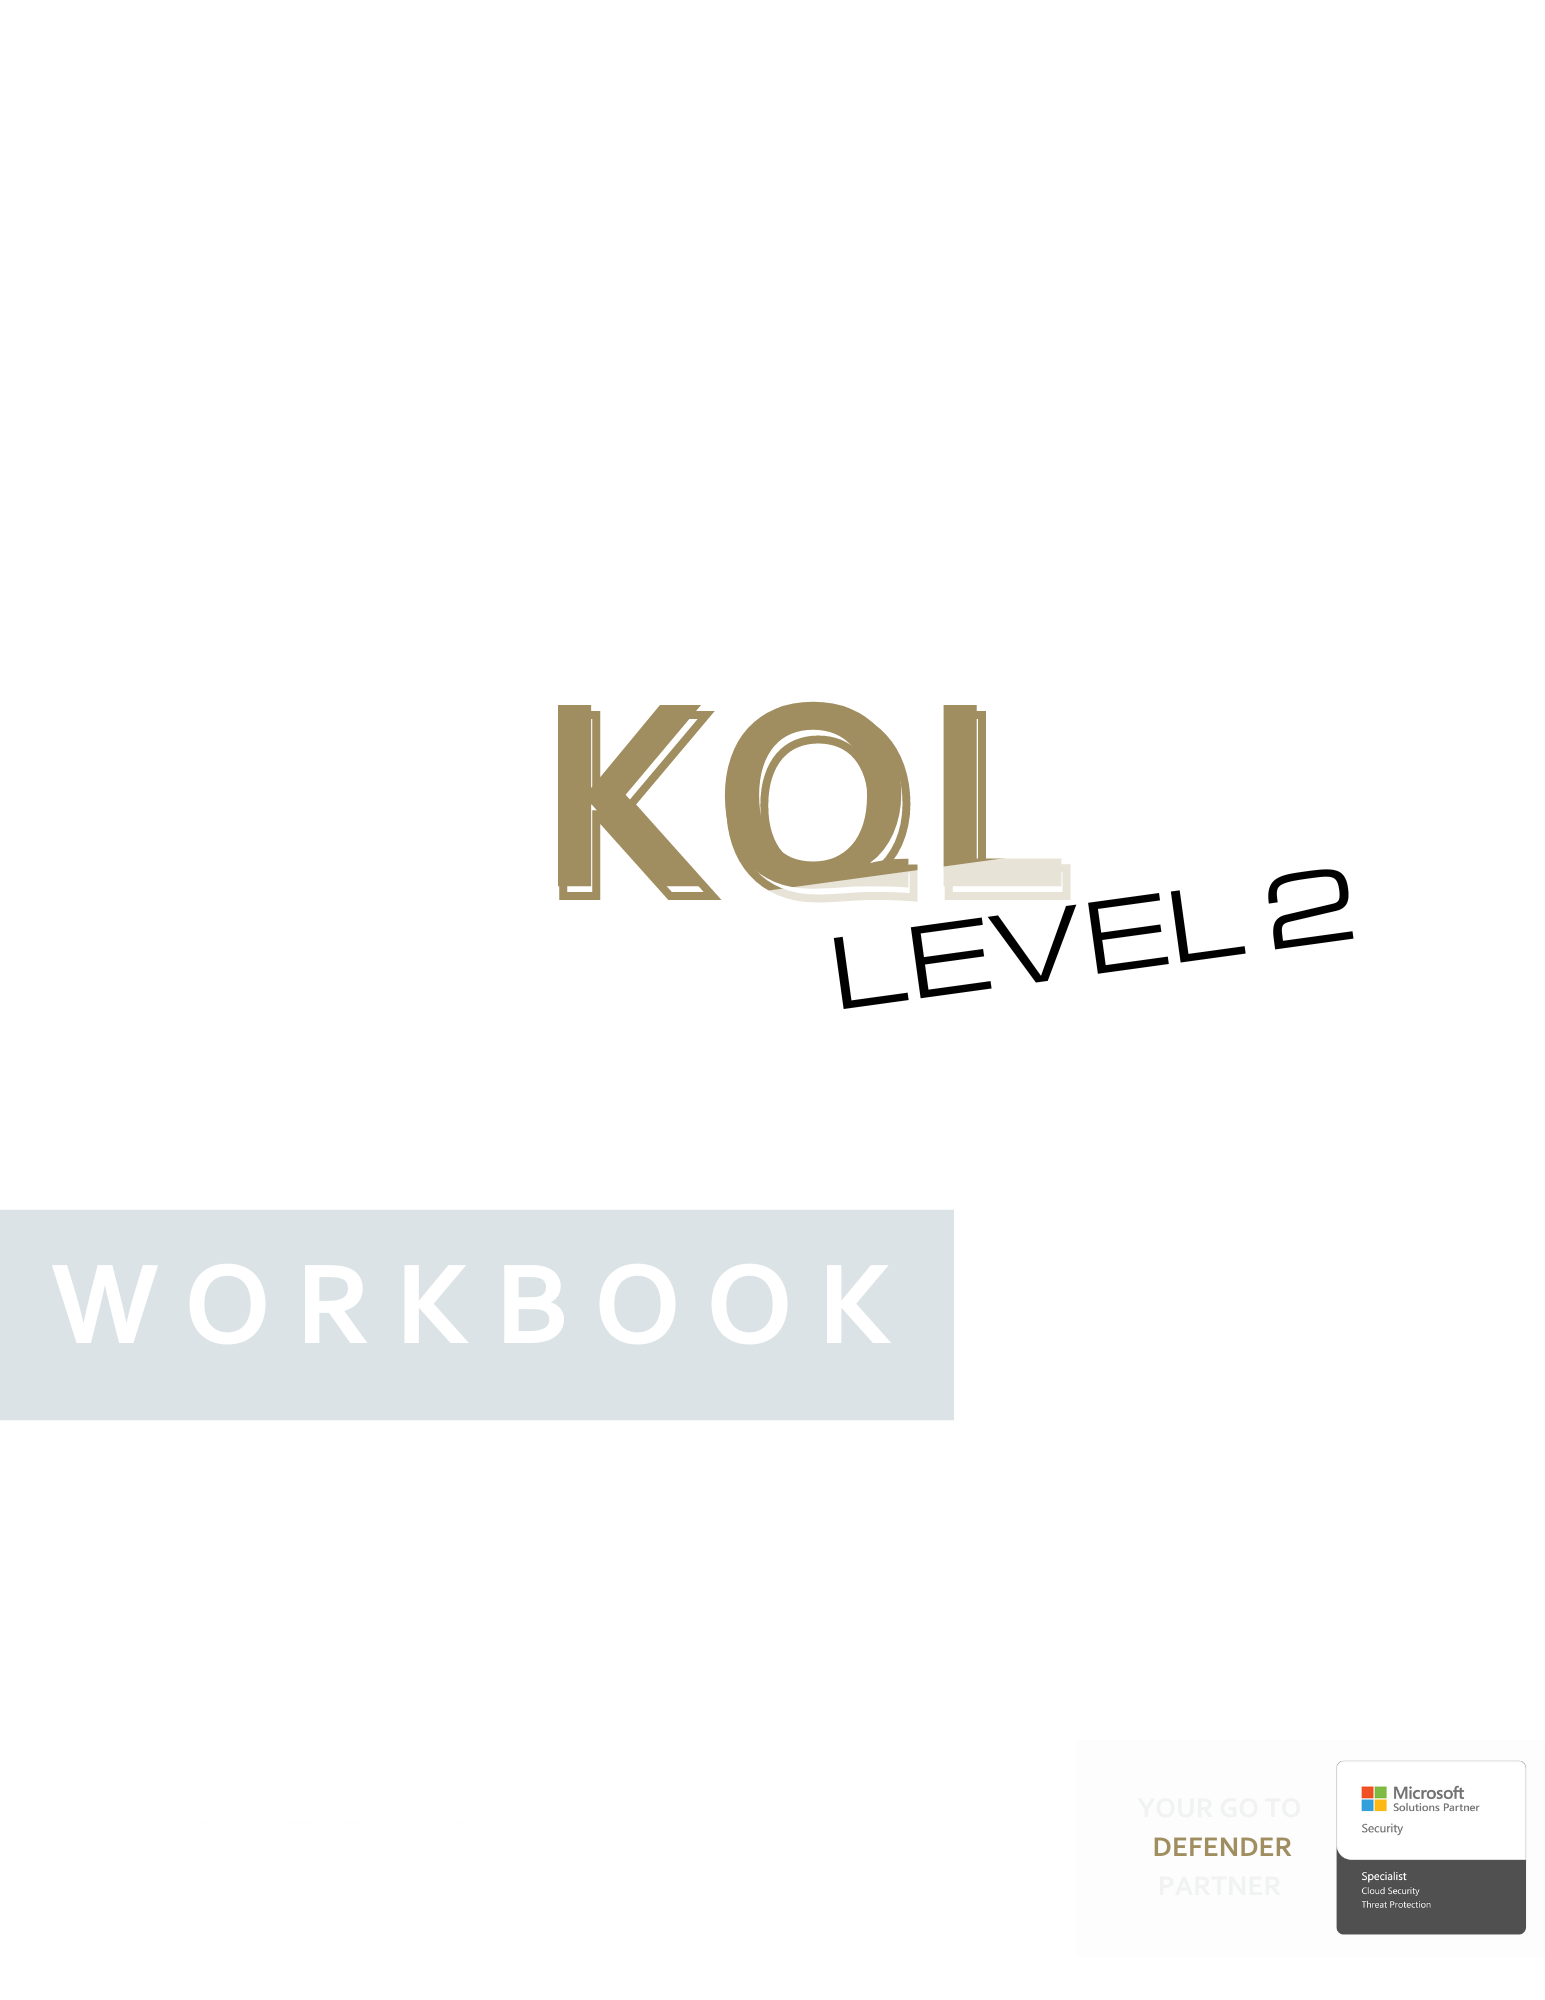 KQL Level 2 — Workbook GRAPHIC